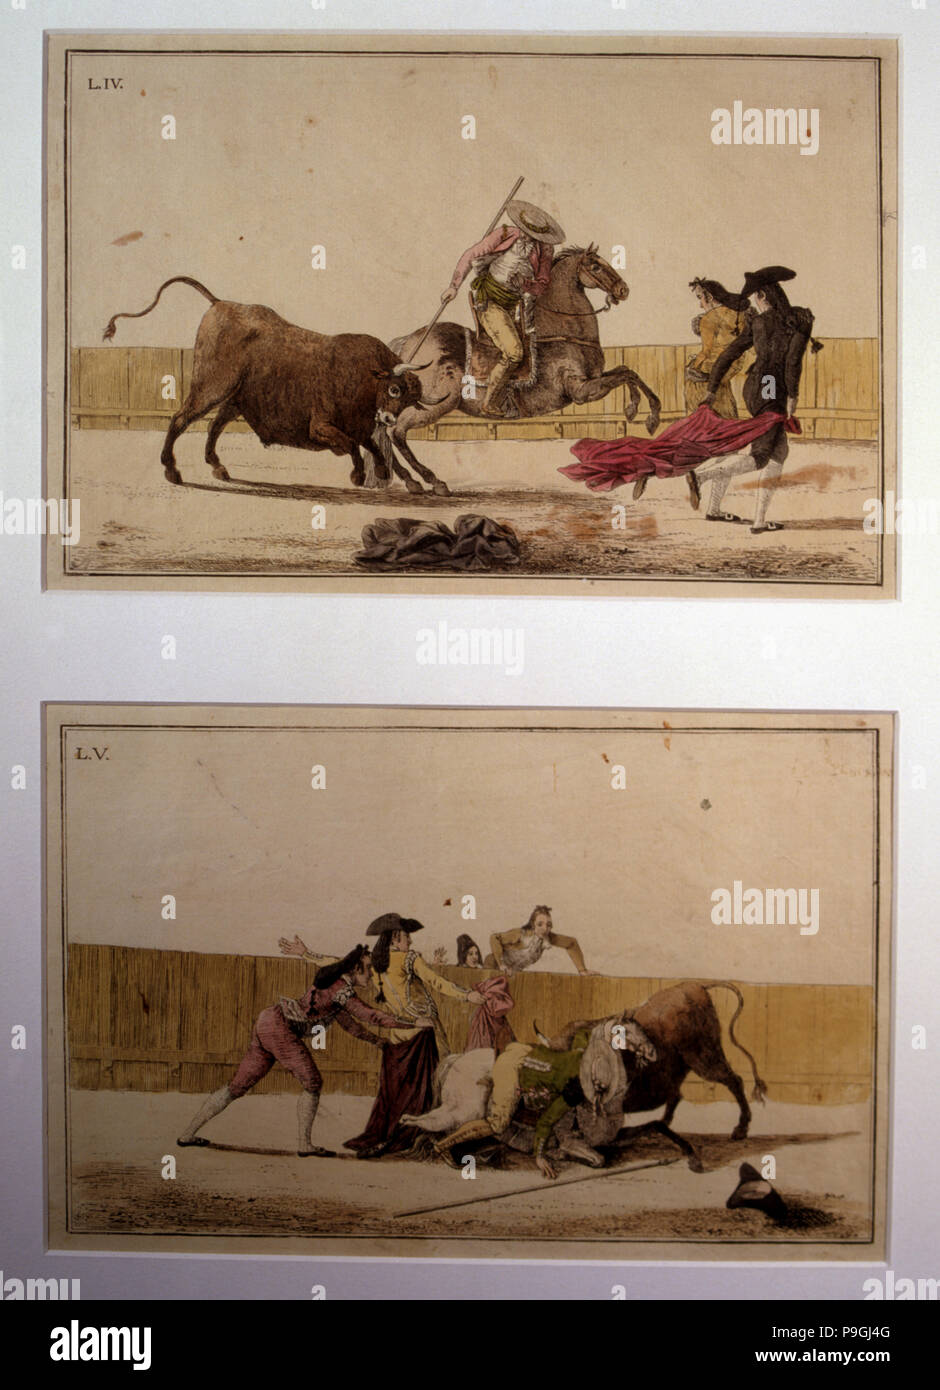 'Suerte de Varas' (Bullfighting stage), colored engraving by Antonio Carnicero. Stock Photo